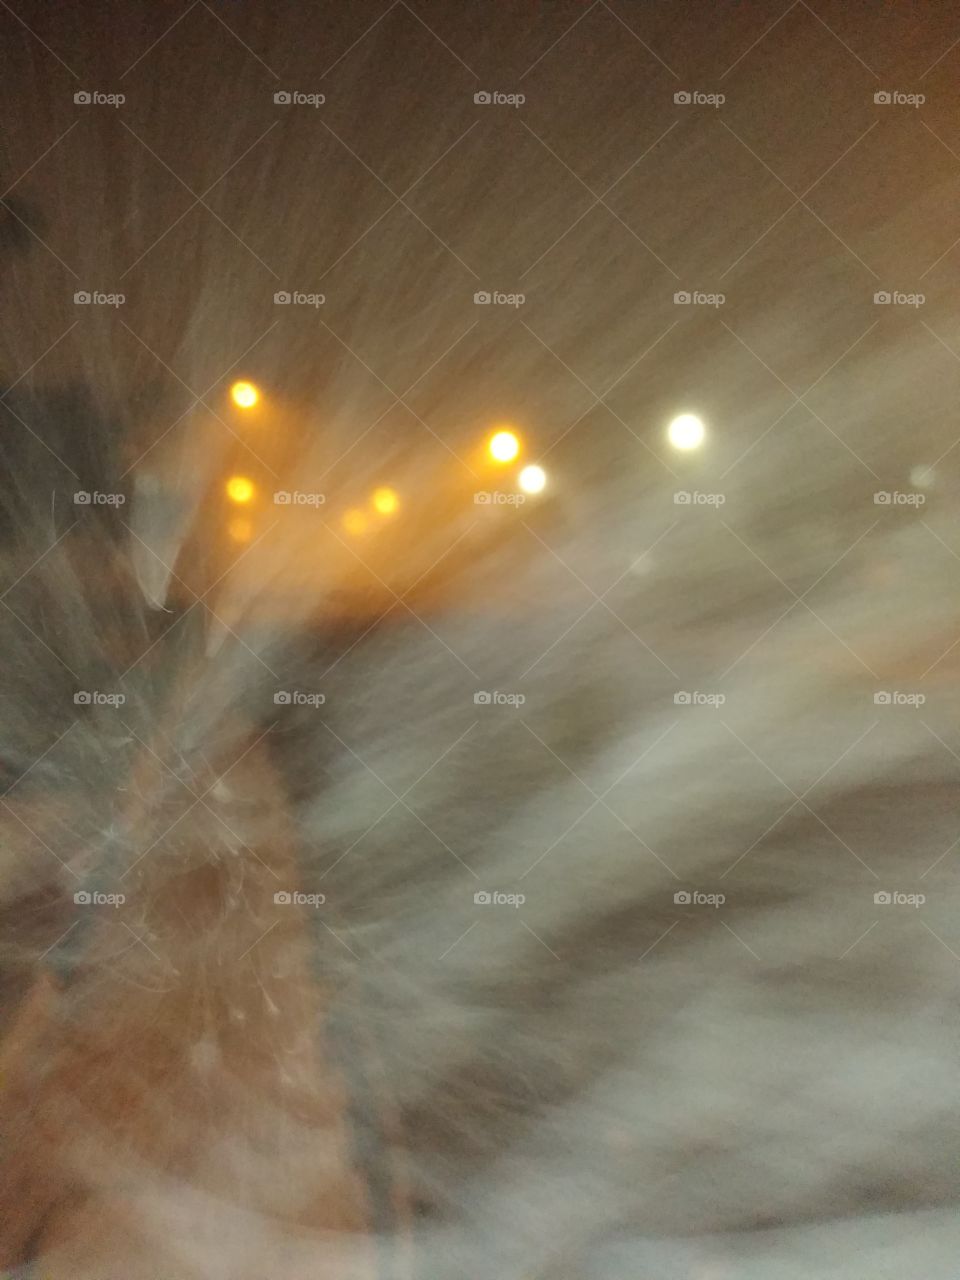 foggy winter night in Carson ca